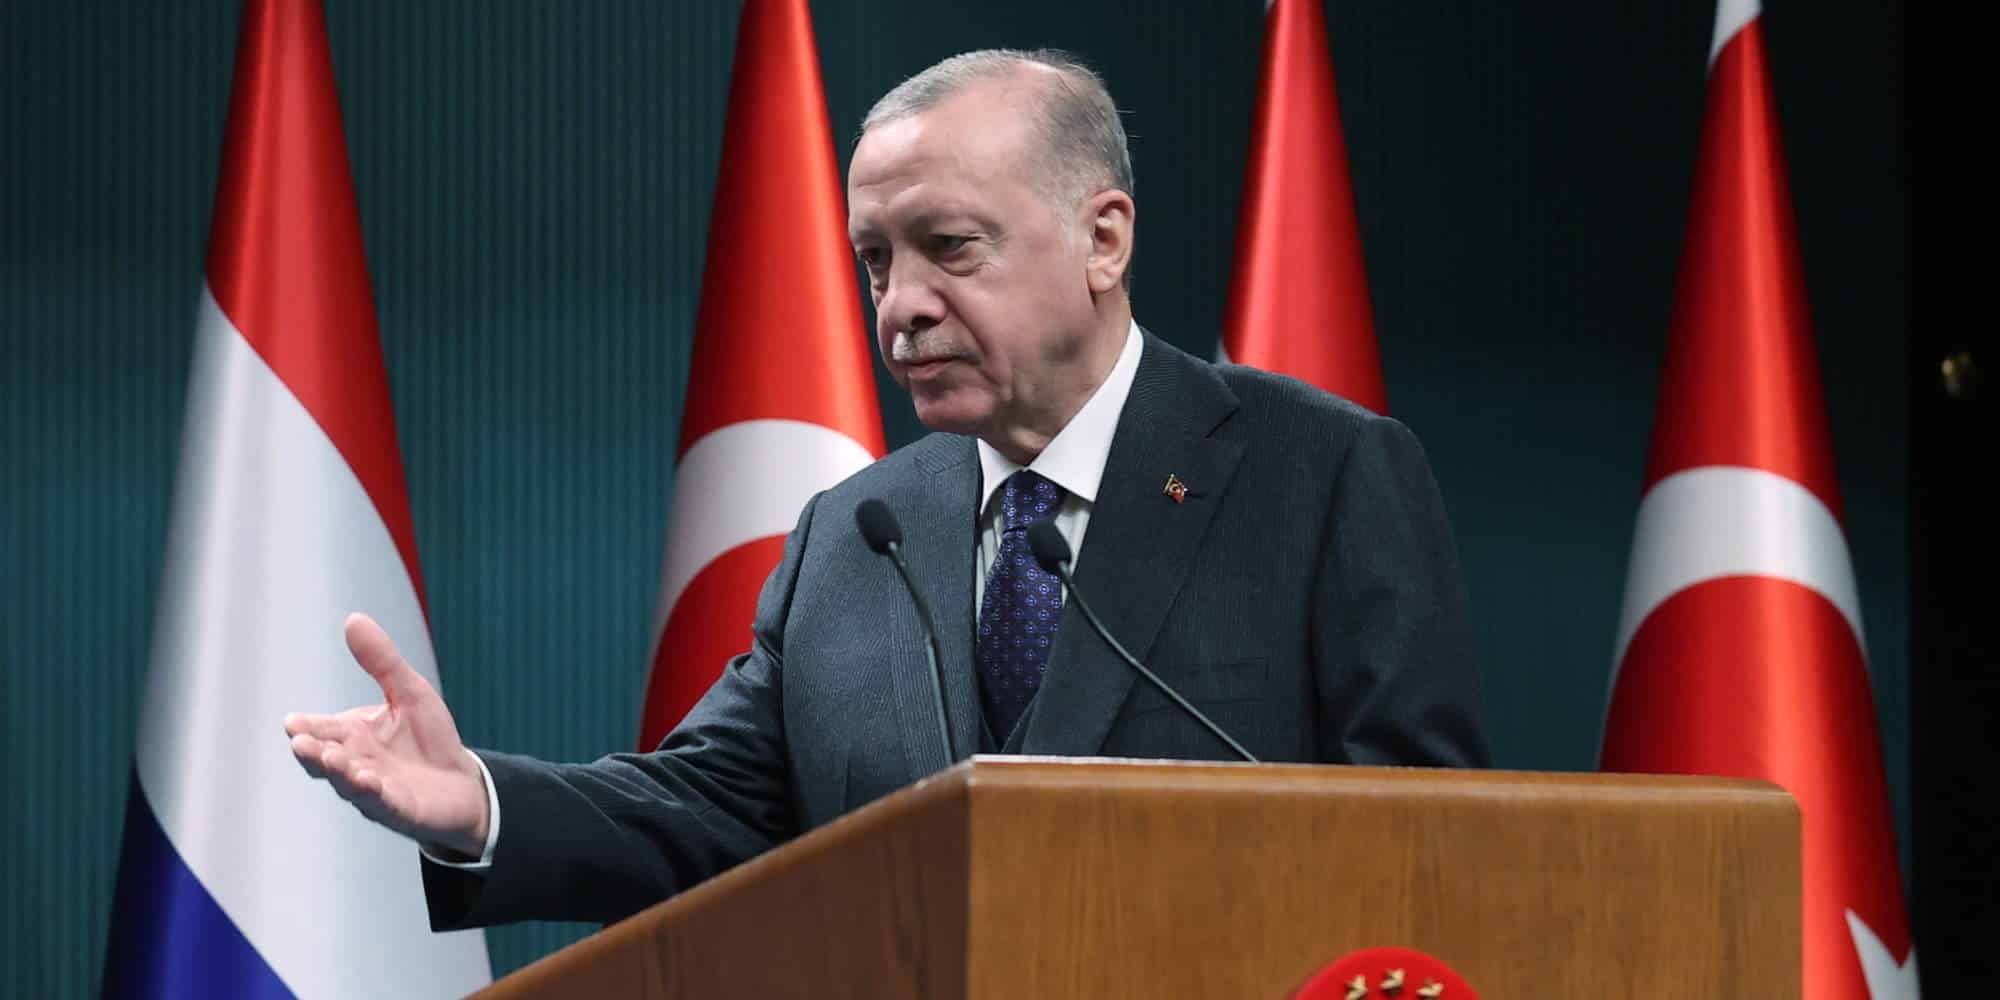 Ο πρόεδρος στην Τουρκία Ρετζέπ Ταγίπ Ερντογάν